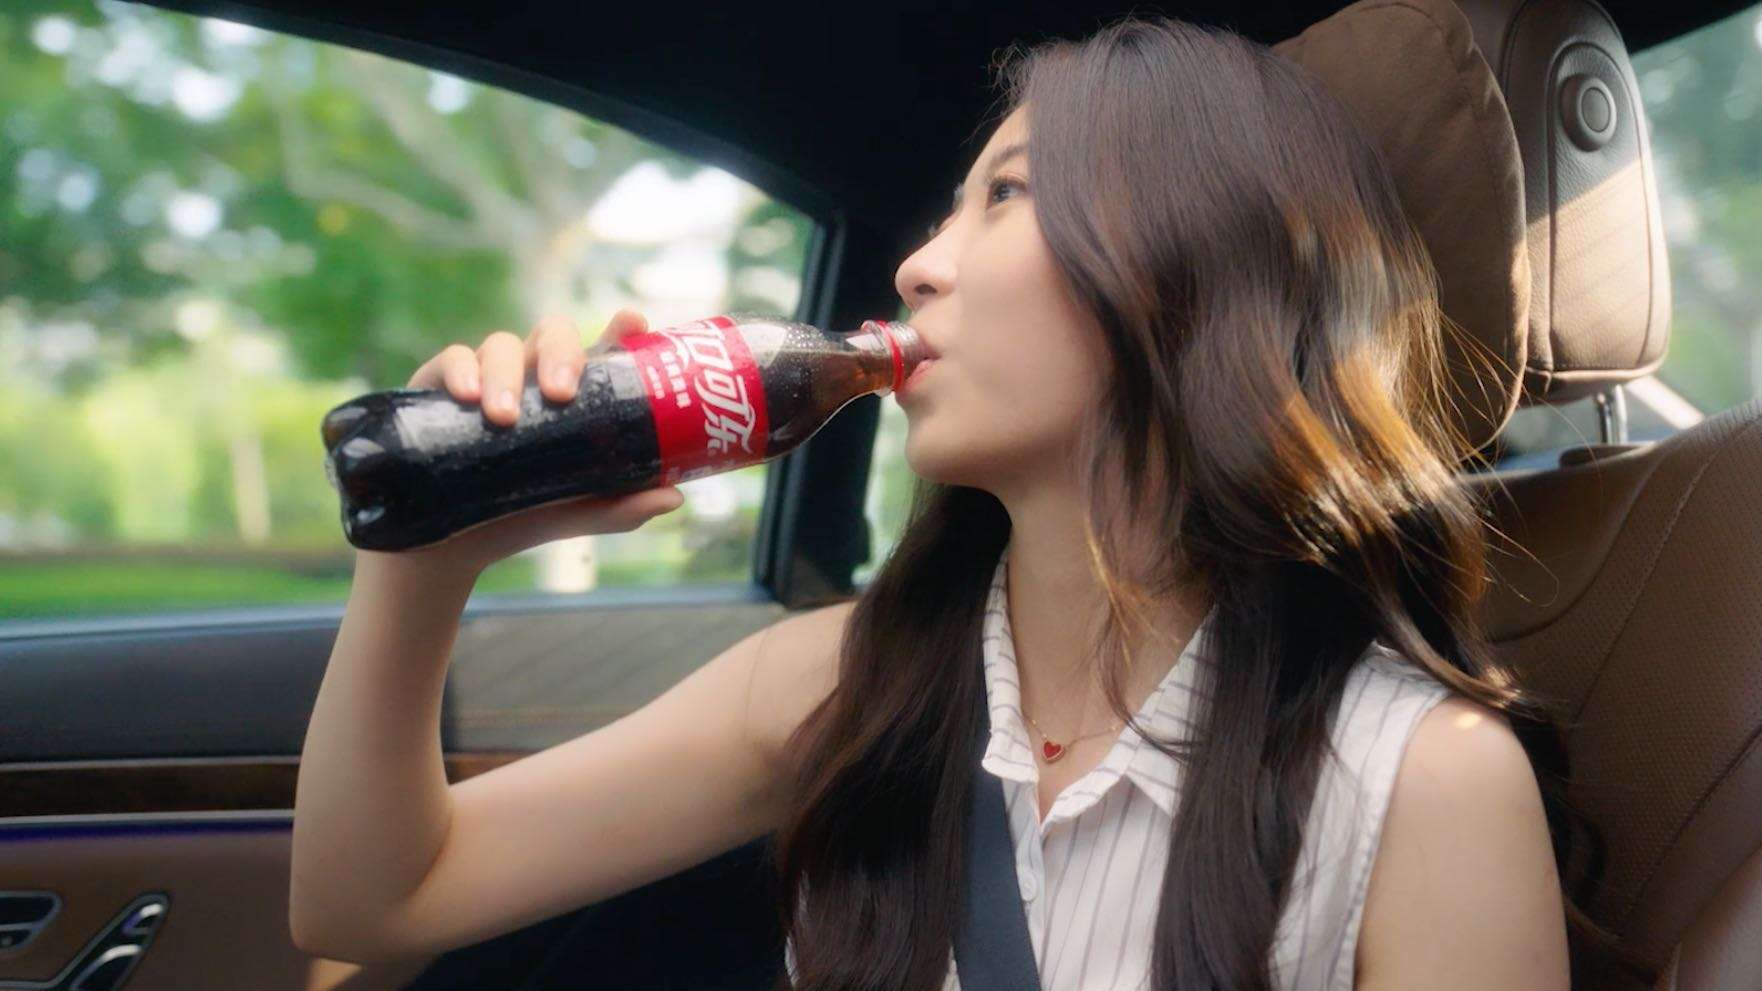 「Coke breaks」#可口可乐✖️琅阁文化